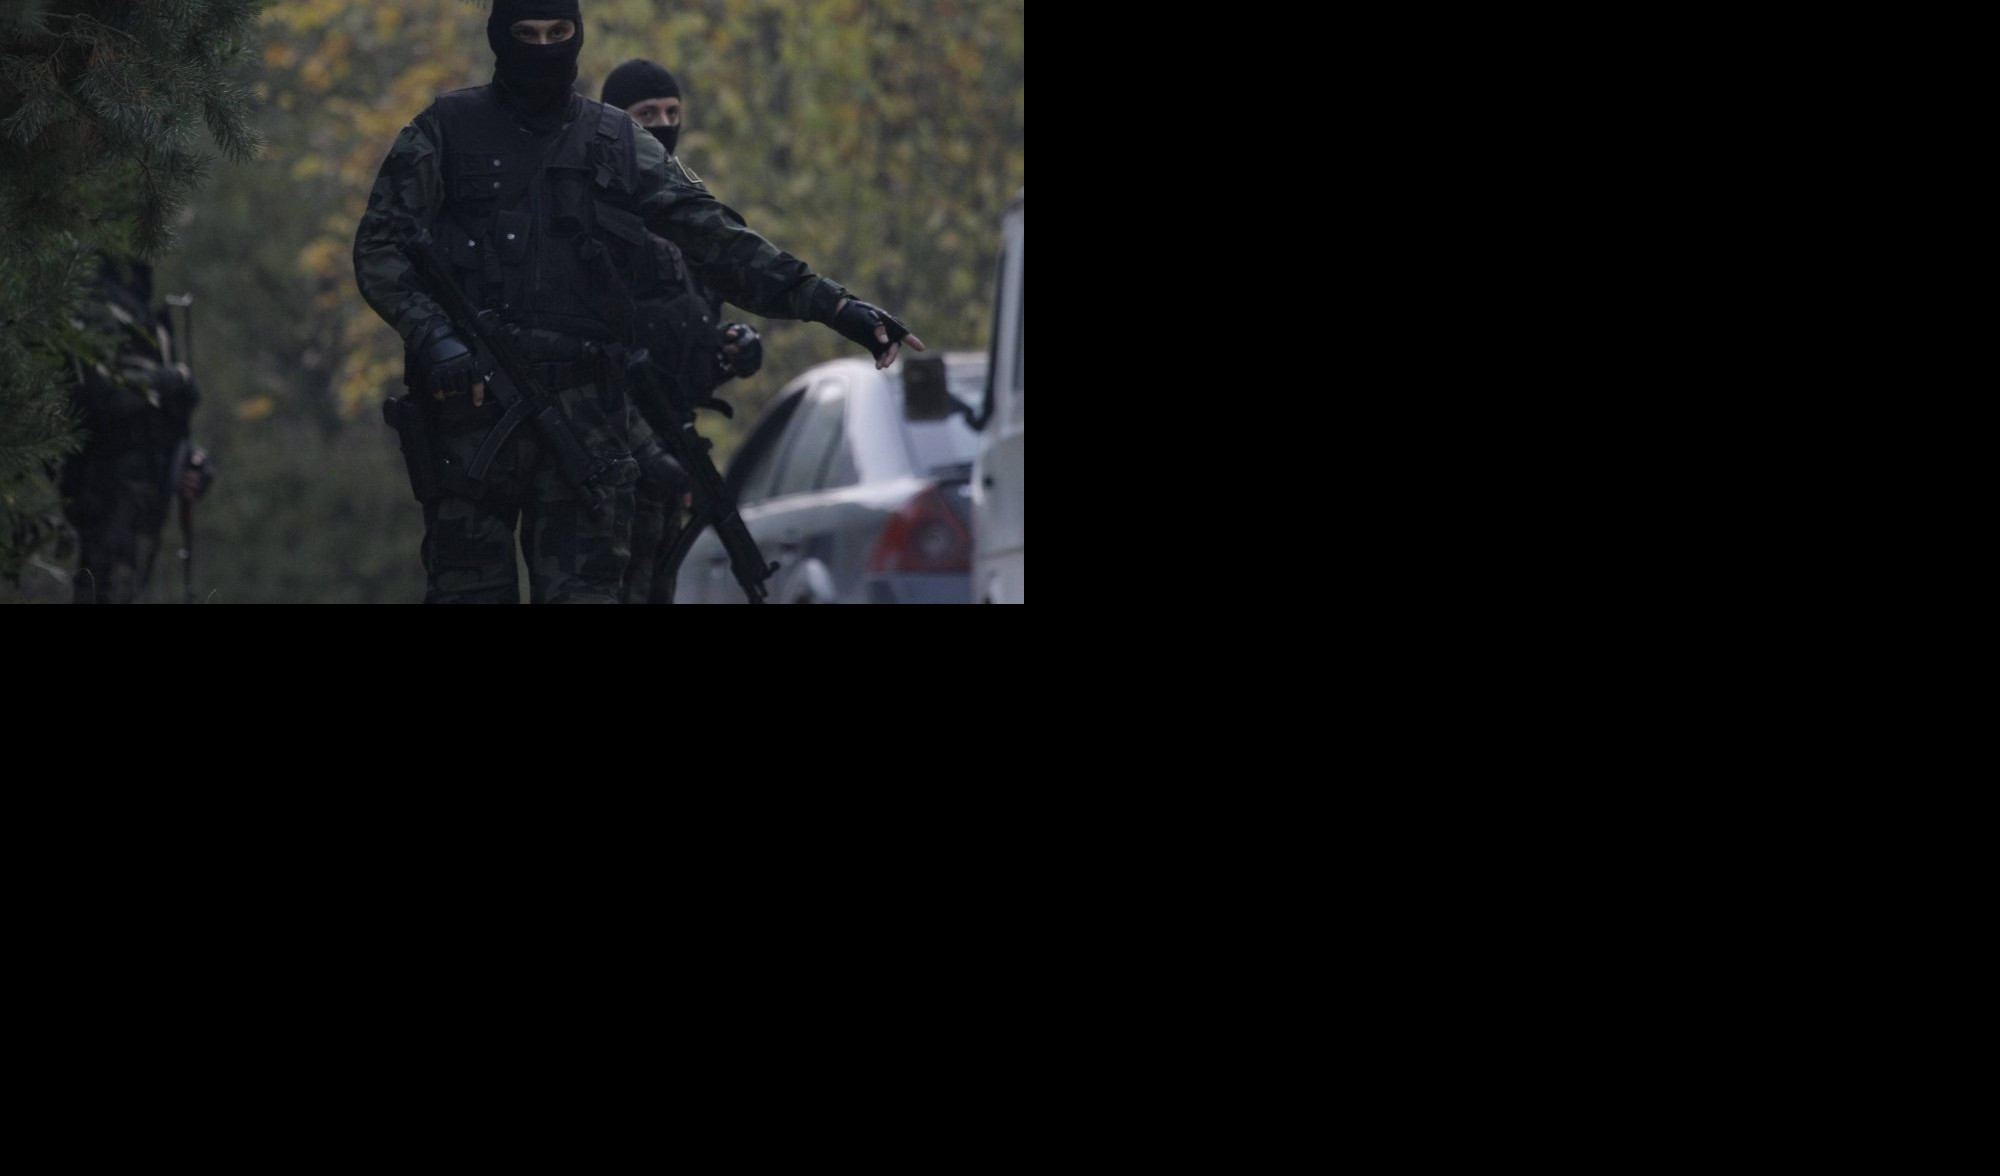 (FOTO) VEHABIJA IZ GORNJE MAOČE U BEKSTVU! Bosanski terorista Nusret Imamović na listi 10 najtraženih terorista u svetu!